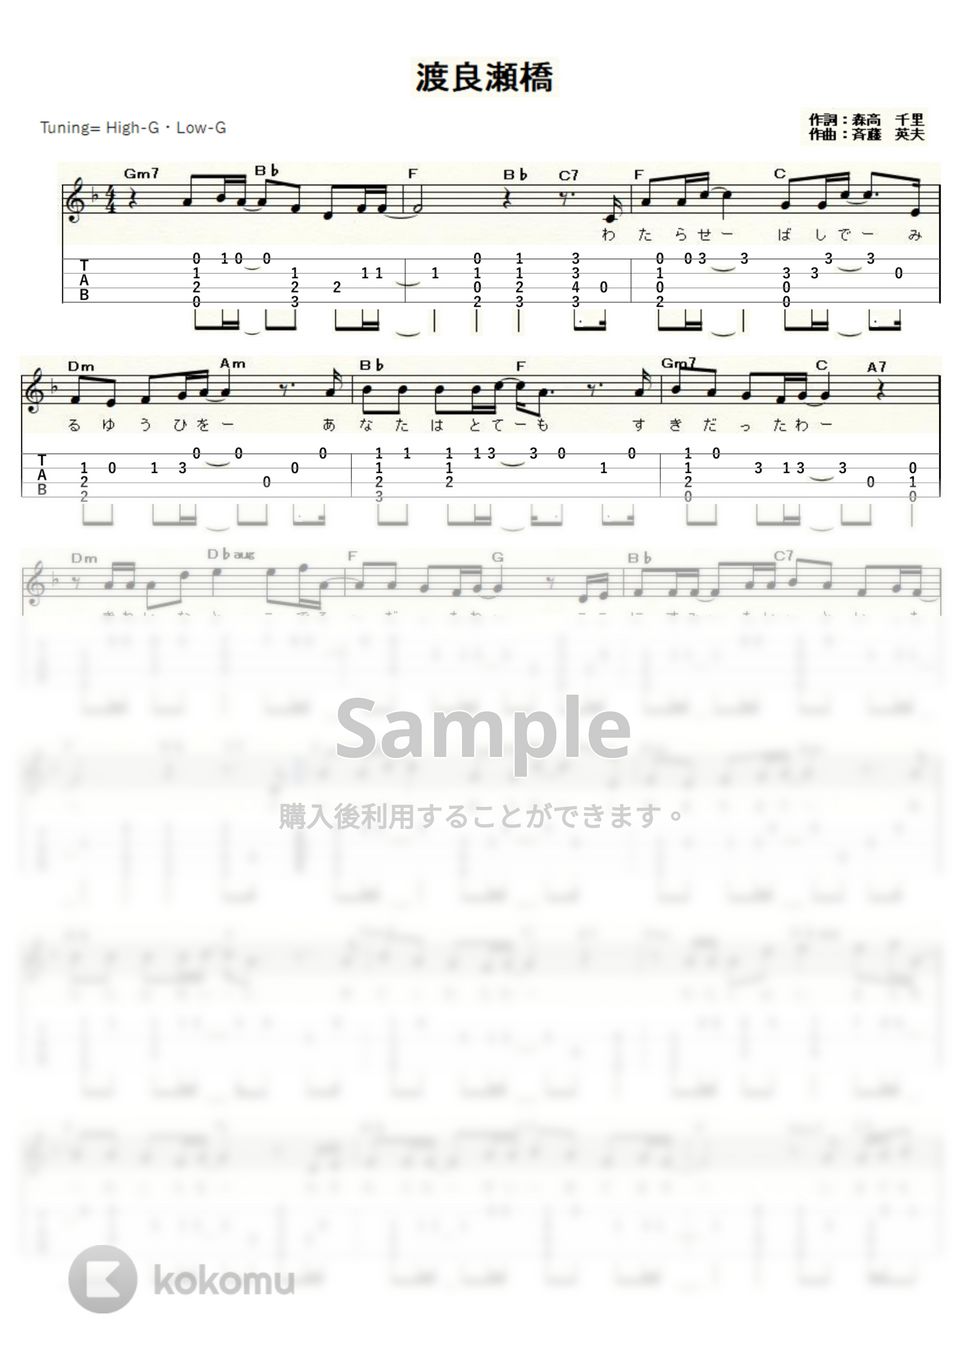 森高千里 - 渡良瀬橋 (ｳｸﾚﾚｿﾛ / High-G,Low-G / 中級) by ukulelepapa